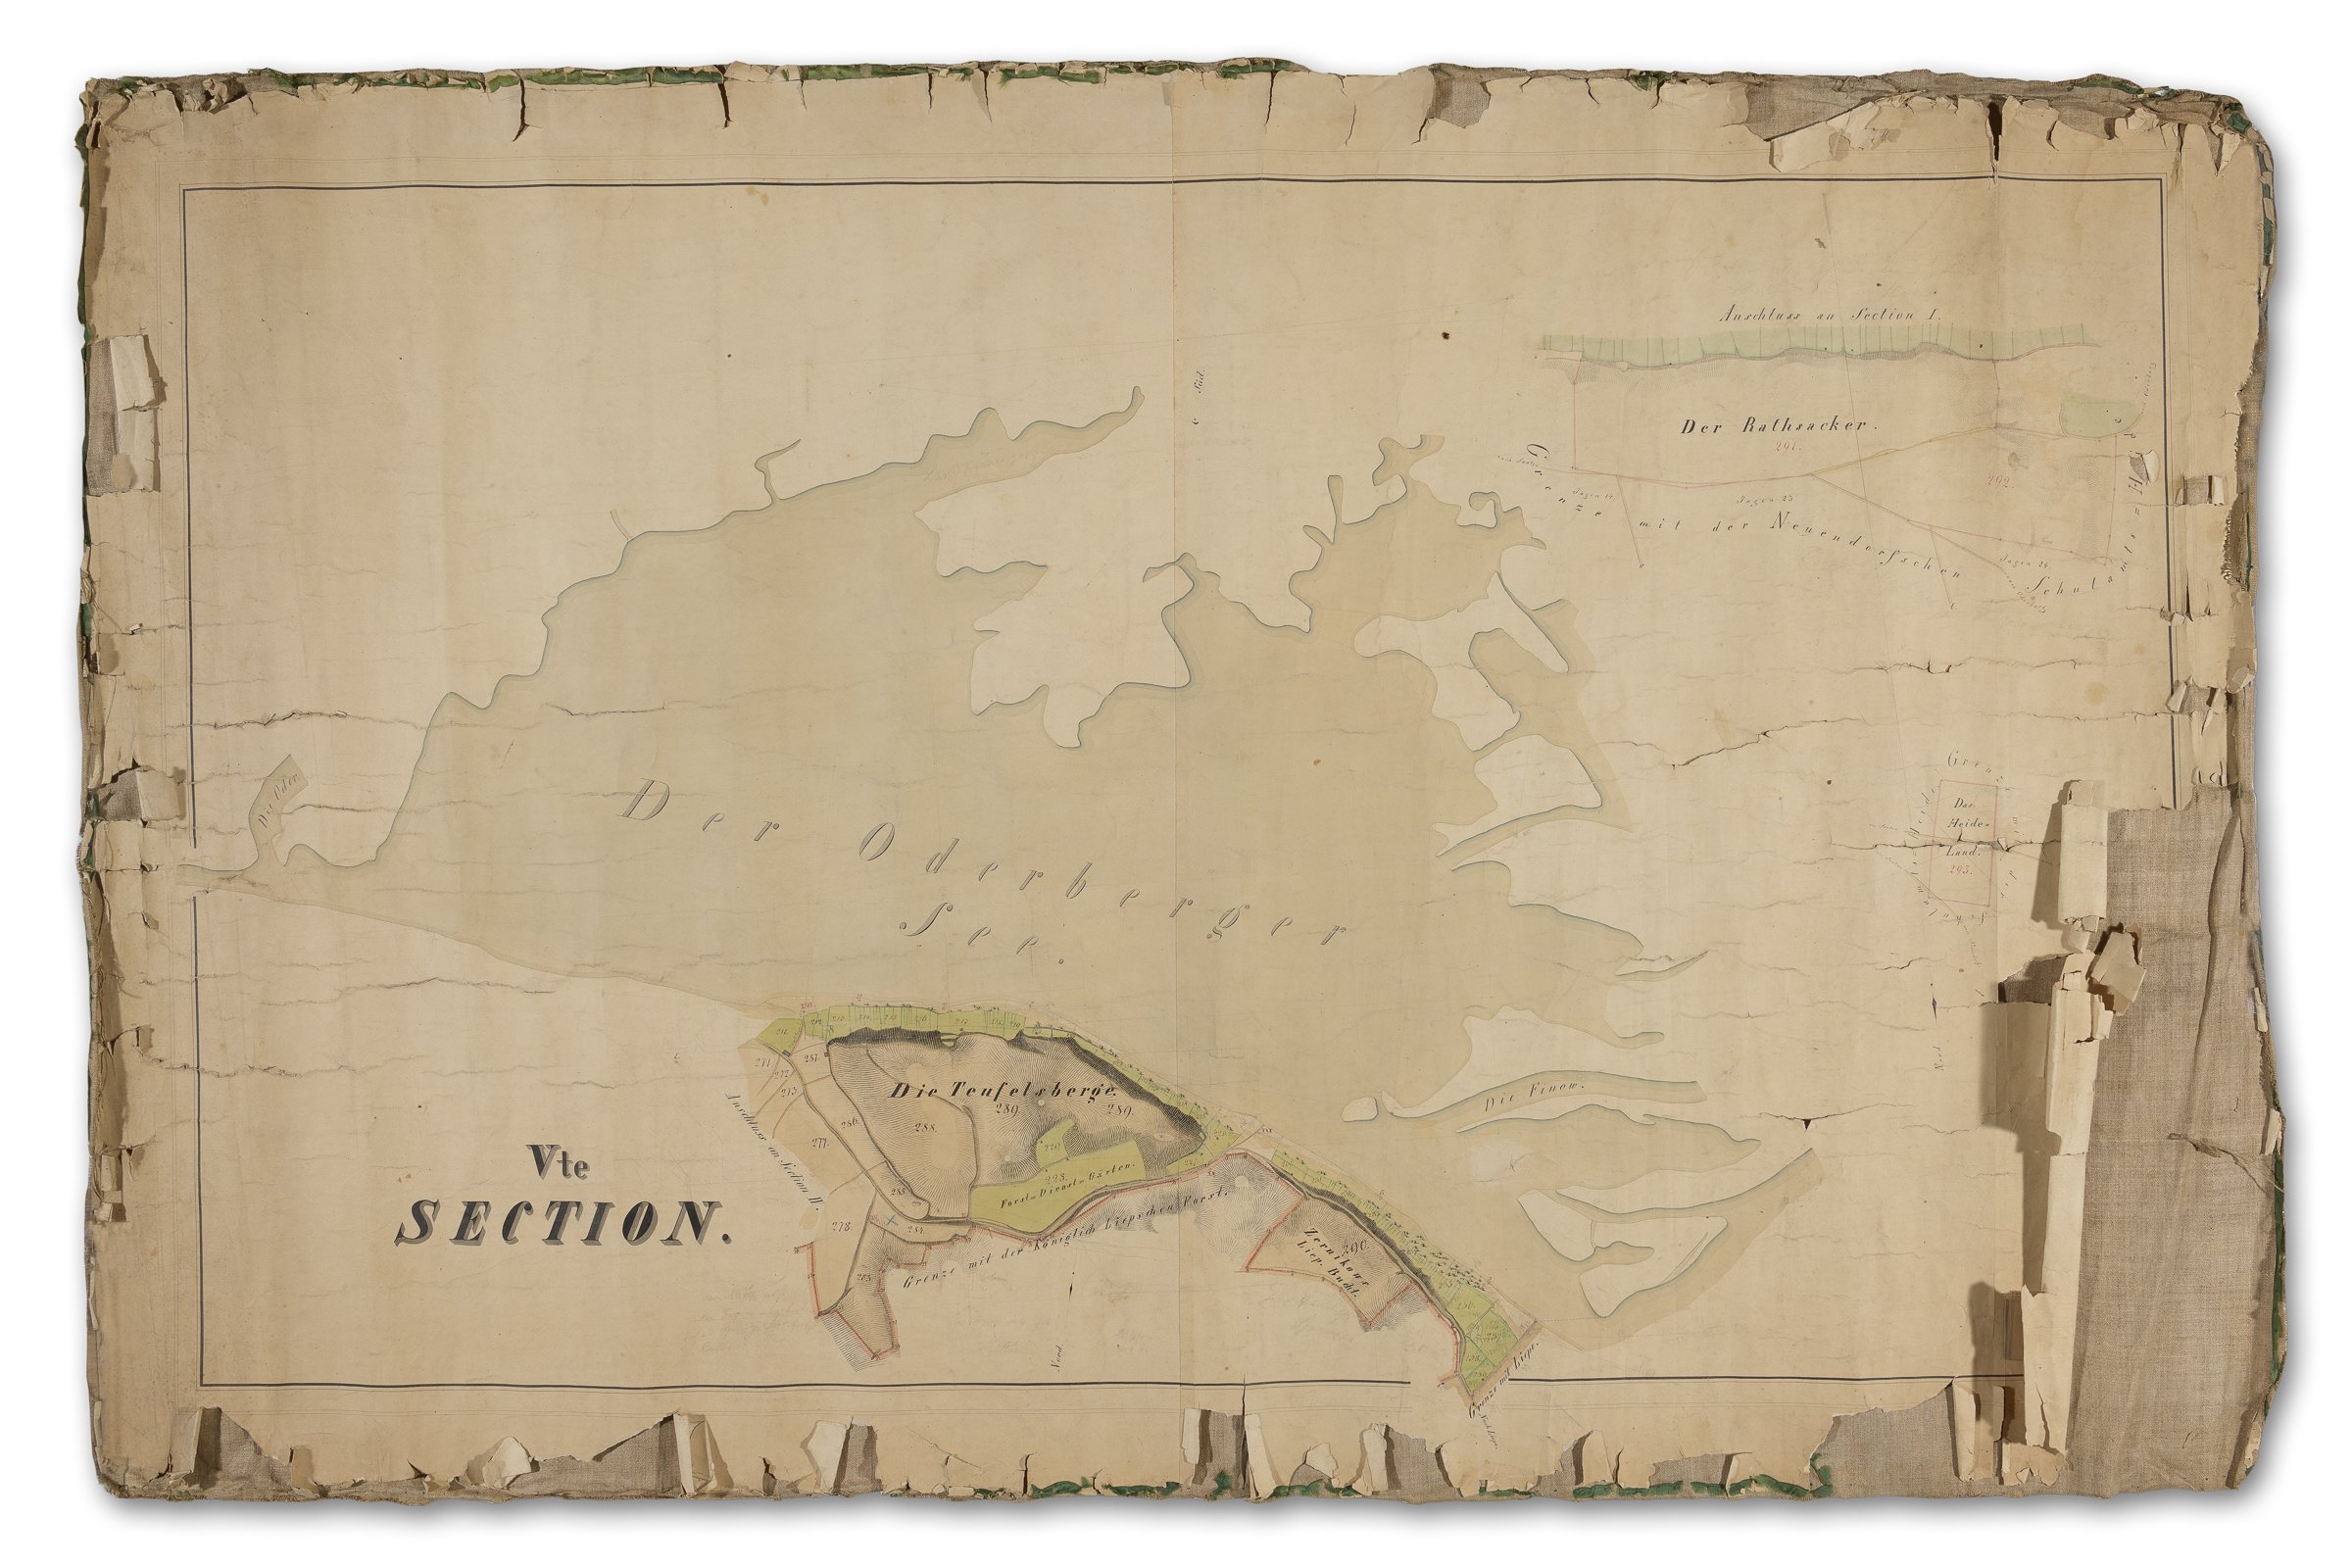 Landkarte Oderberger Stadtgebiet, Sektion V, Karte 45, 1835 - 1837 (Binnenschifffahrts-Museum Oderberg CC BY-NC-SA)